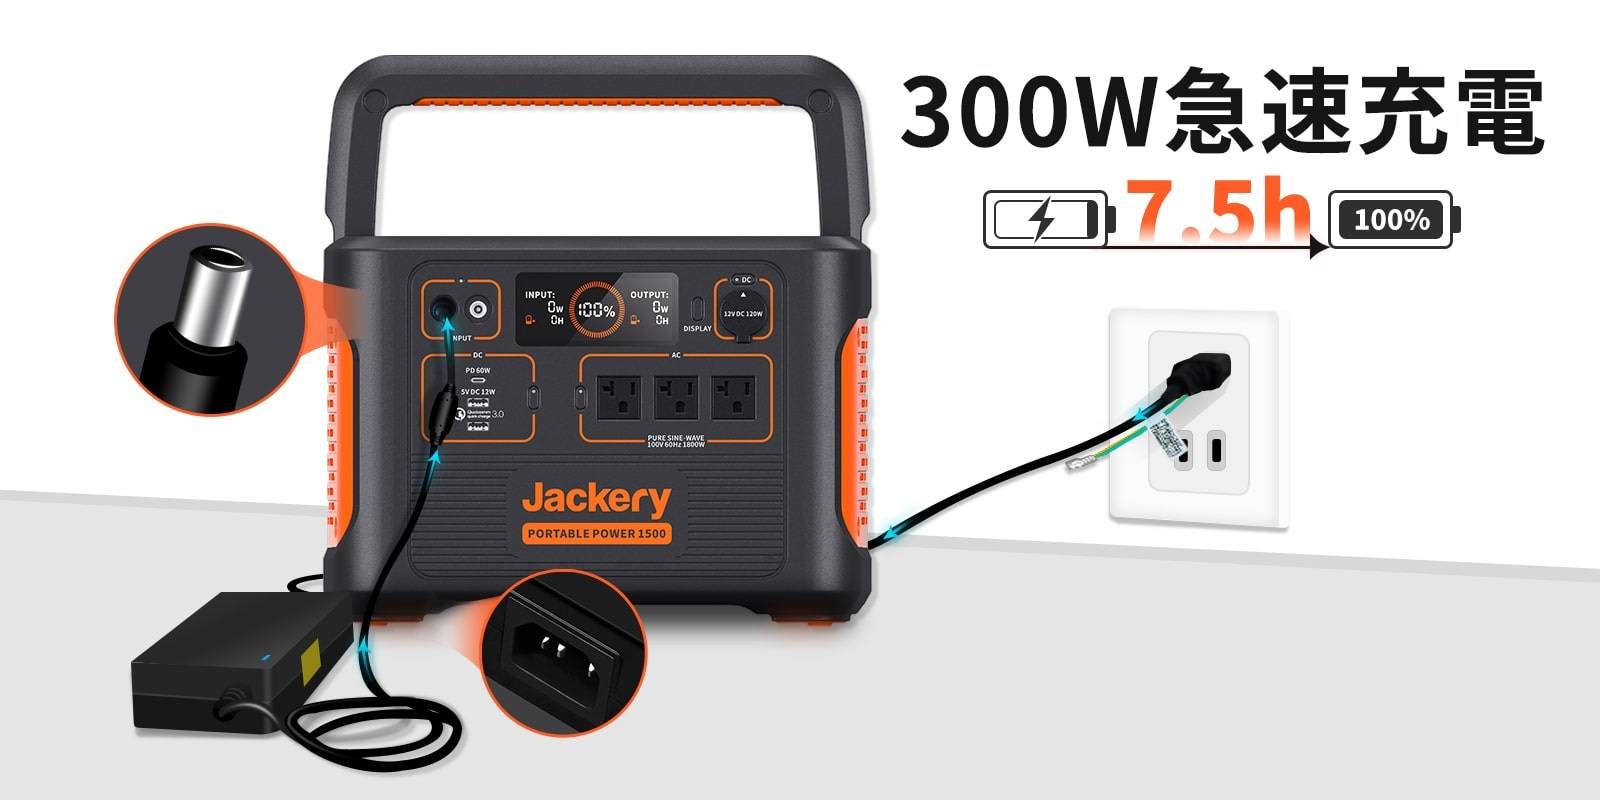 jackery-ptb152-adapter – Jackery Japan